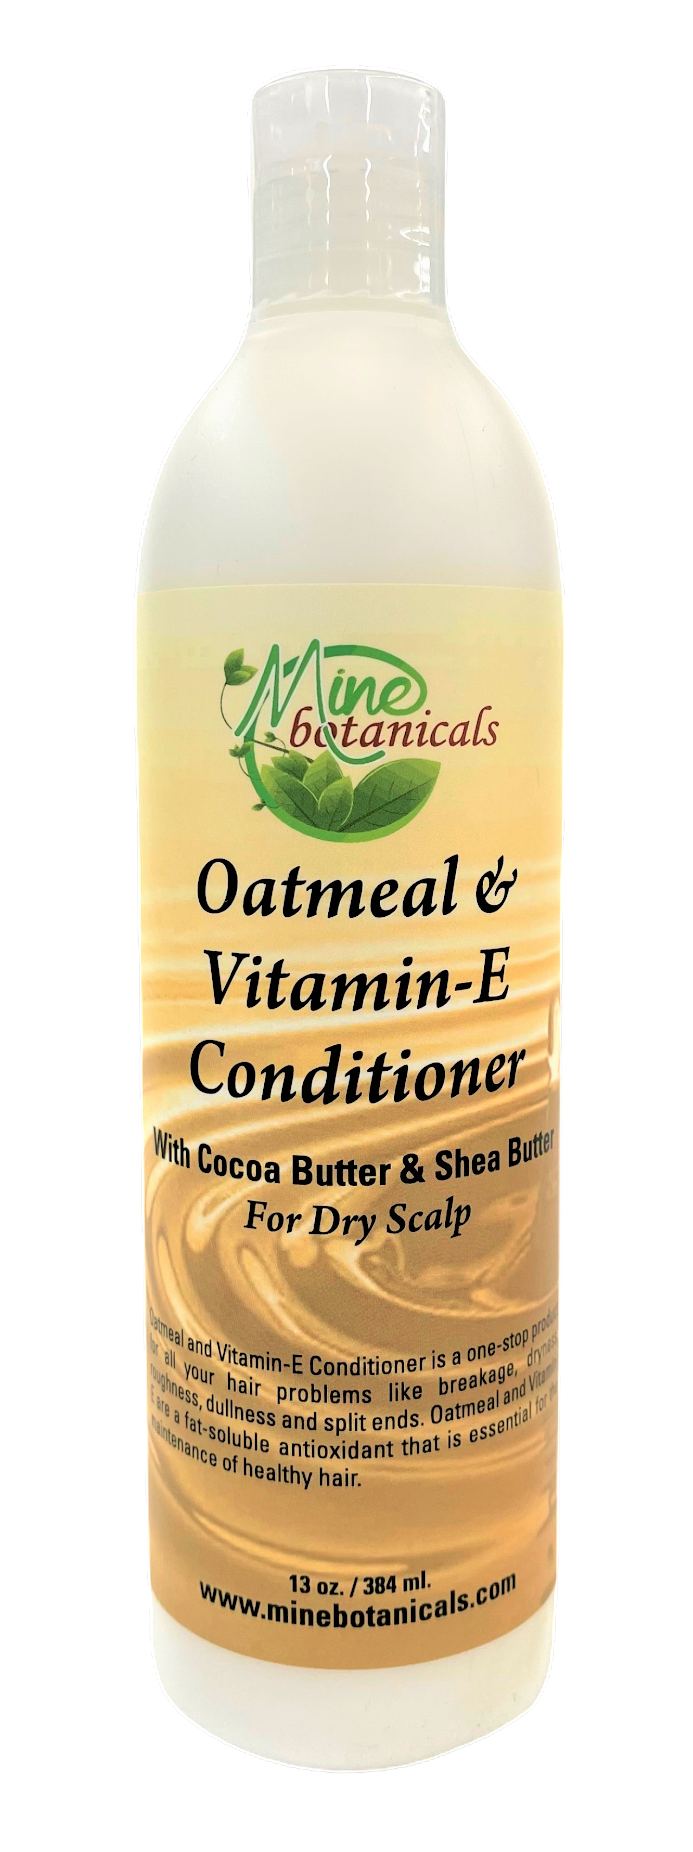 Oatmeal & Vitamin-E Conditioner